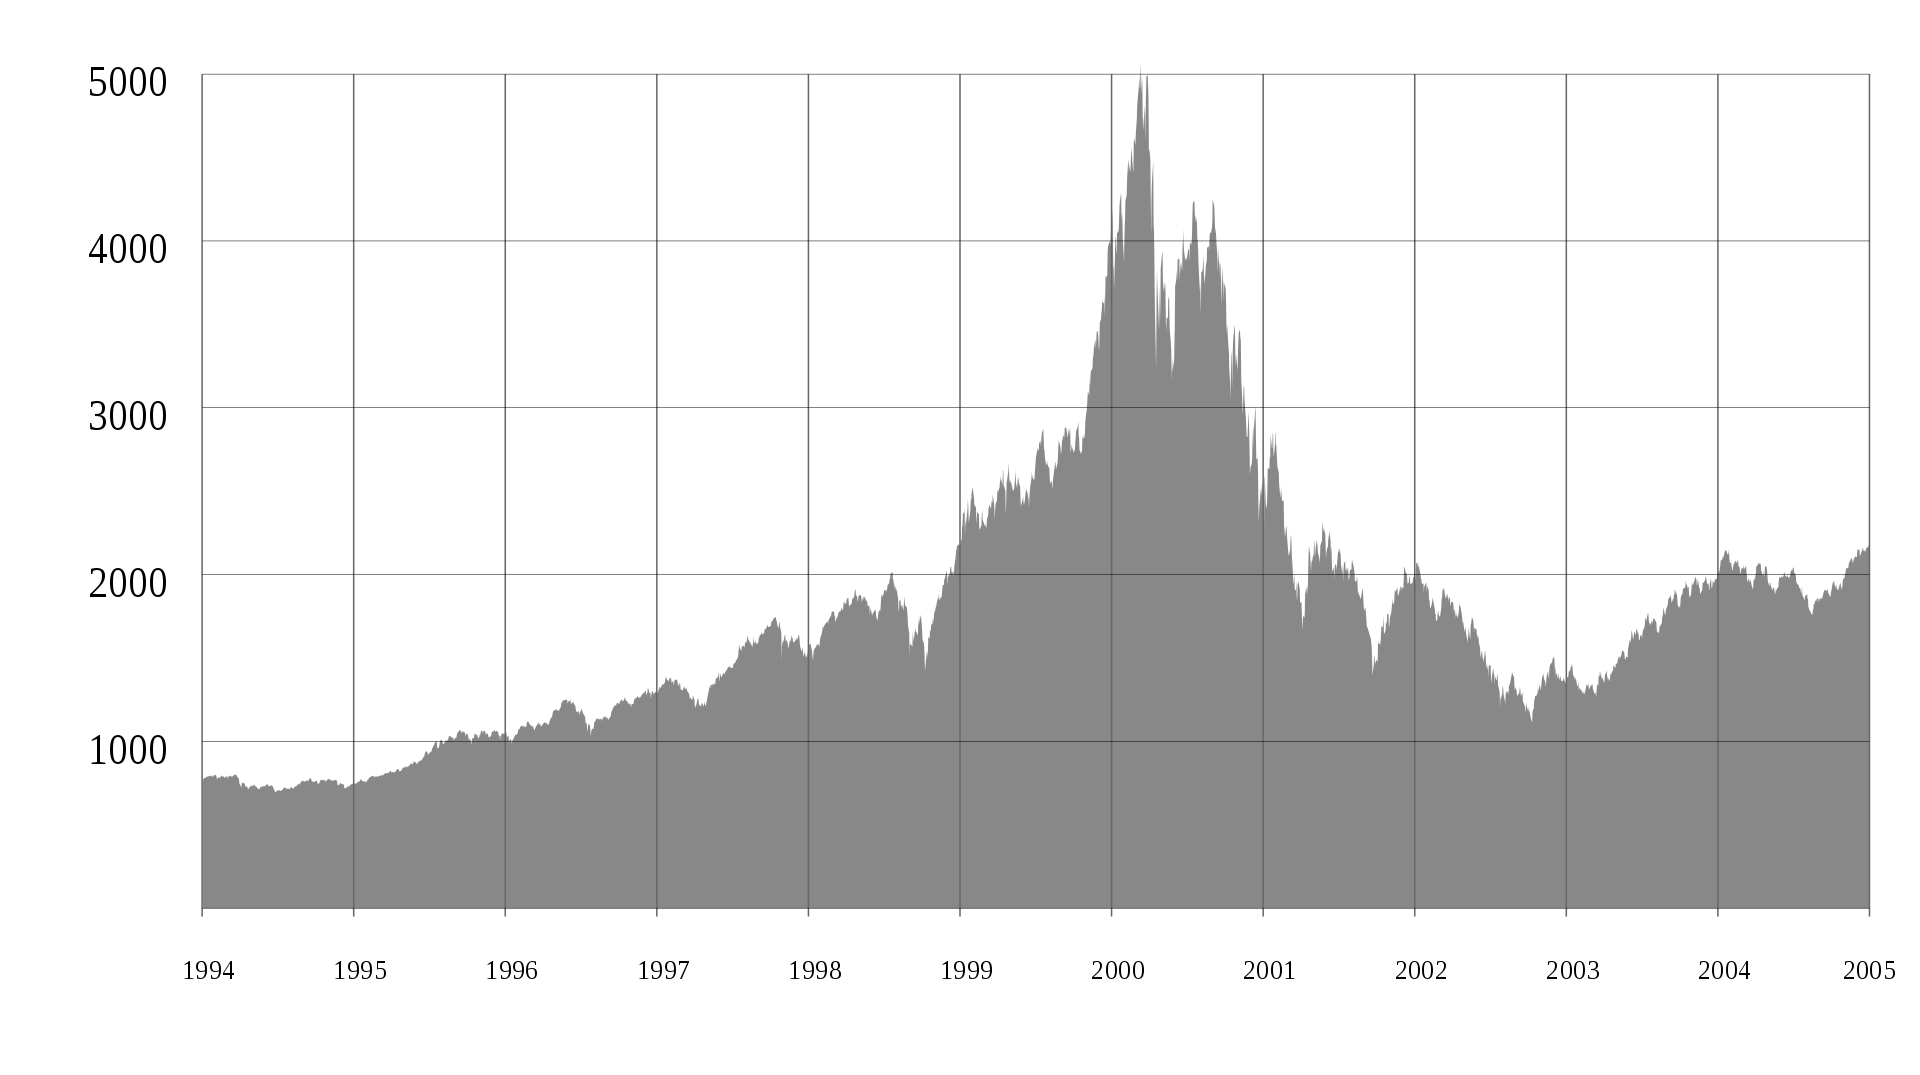 2000年3月开始，纳斯达克指数在30个月内狂泻75%  图源维基百科